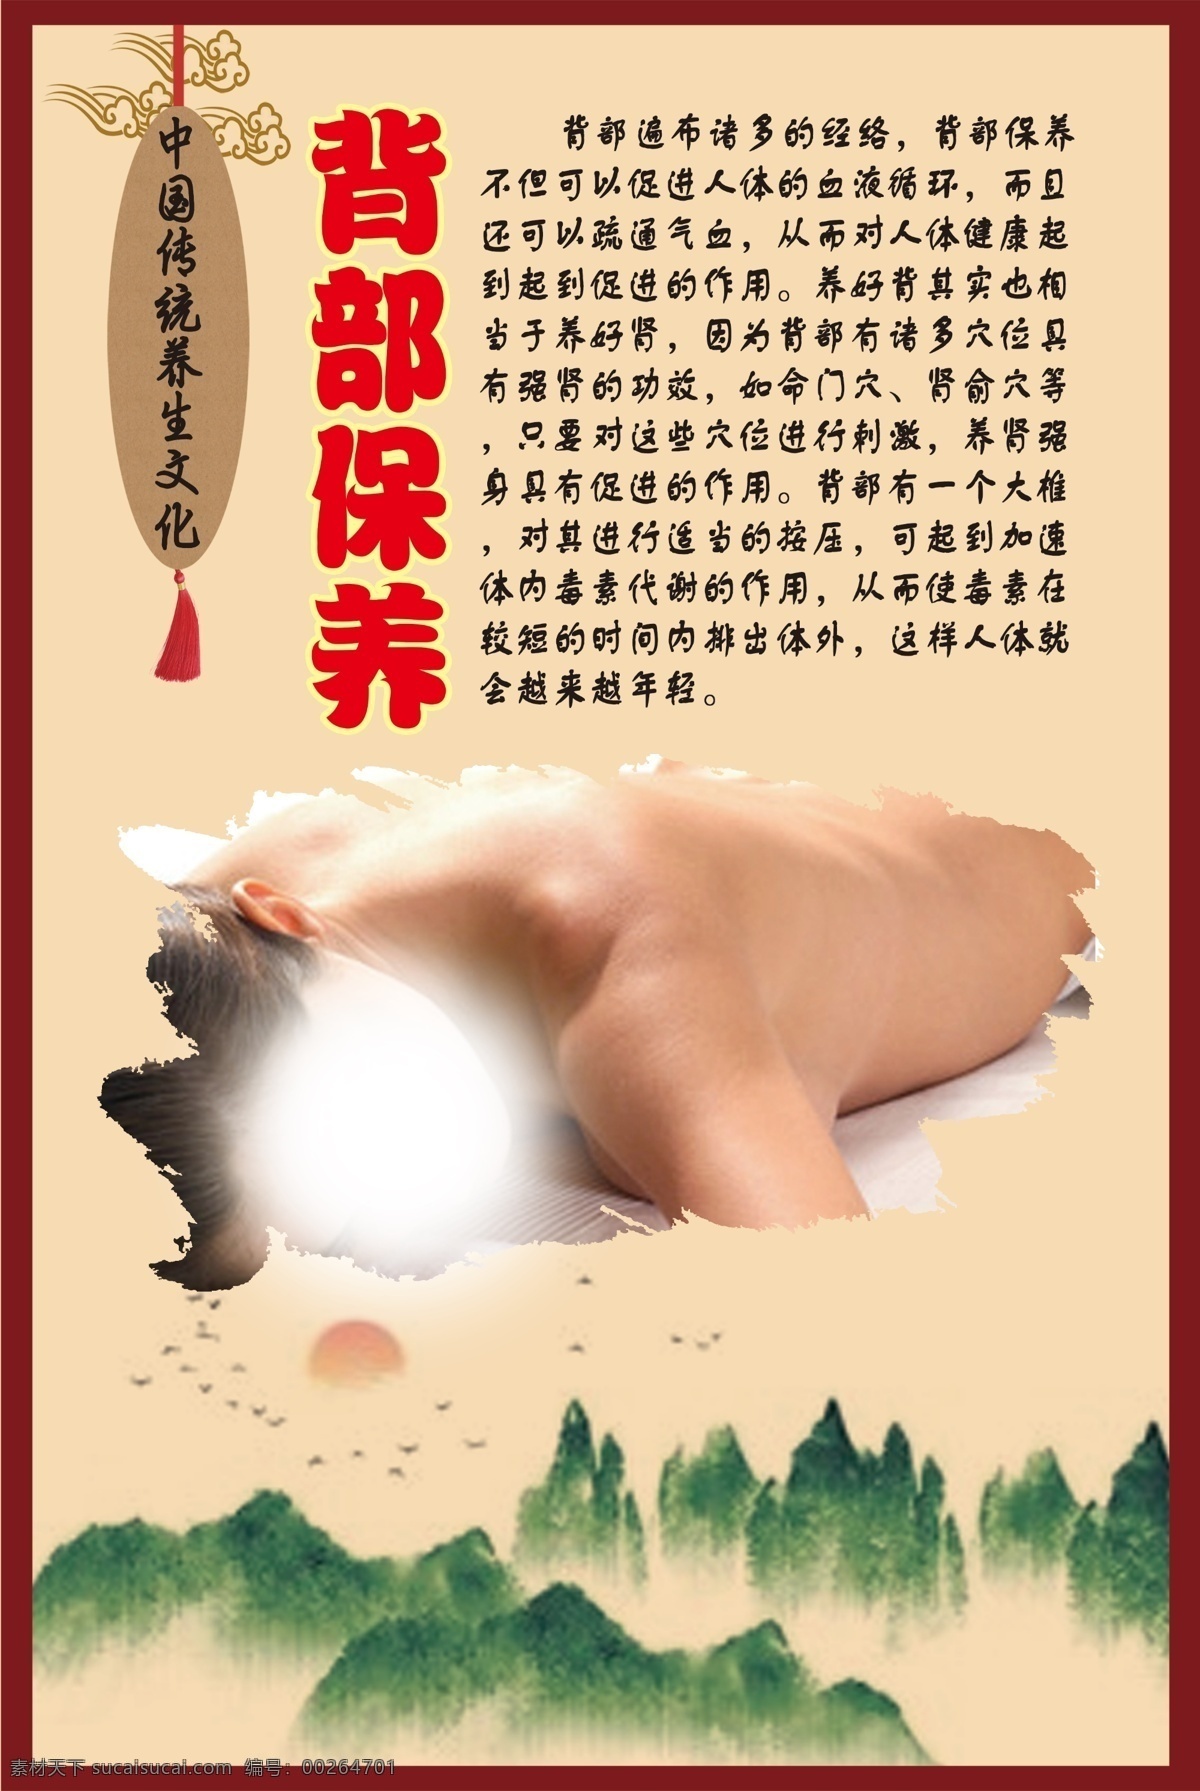 中华 传统 养生 文化 背部 保养 背部保养 传 展板模板